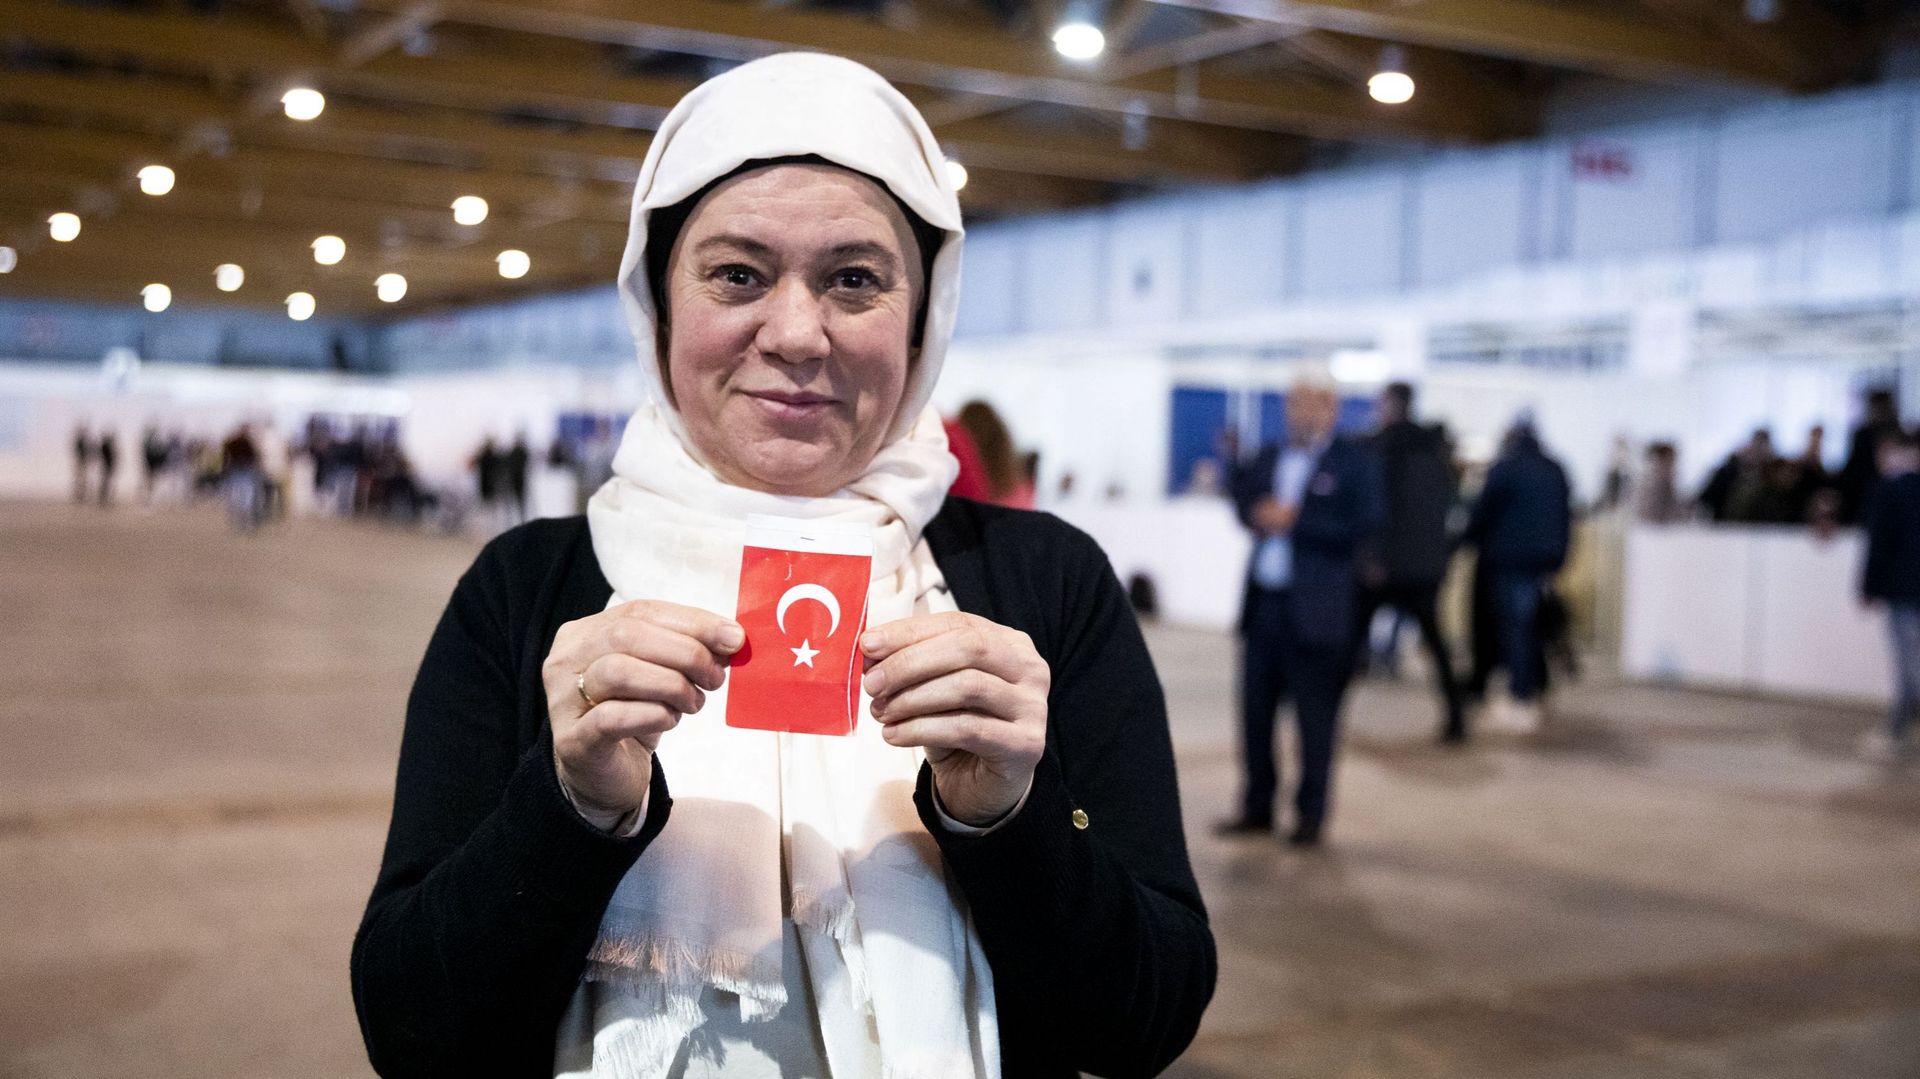 Les Turcs vivant en Belgique ont voté pour les élections présidentielles et législatives du 14 mai prochain au Brussels Expo, à Bruxelles.